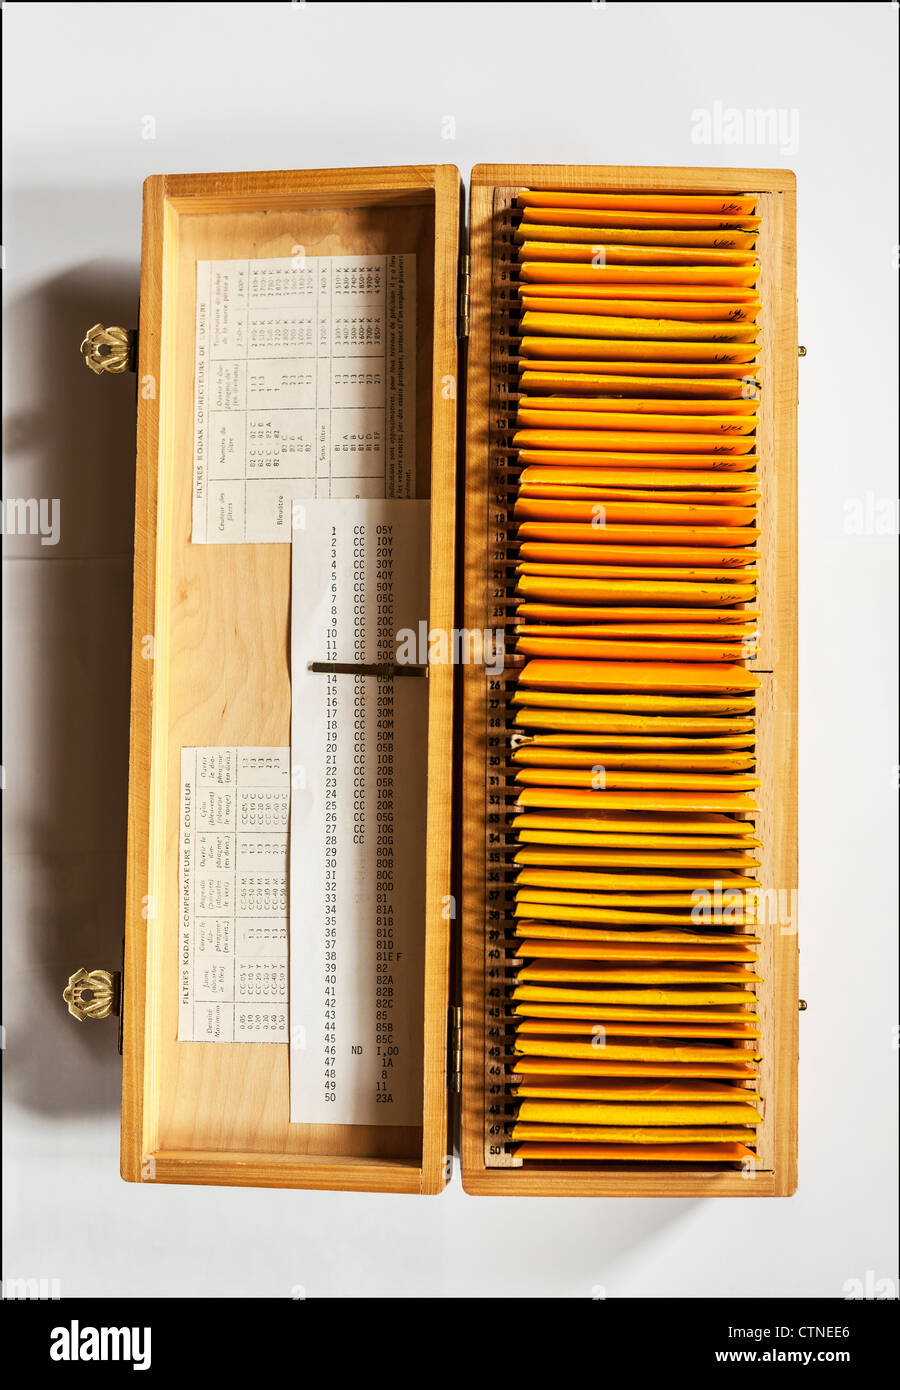 Kodak Wratten filtros de corrección de color fotográfico en la casilla  Fotografía de stock - Alamy